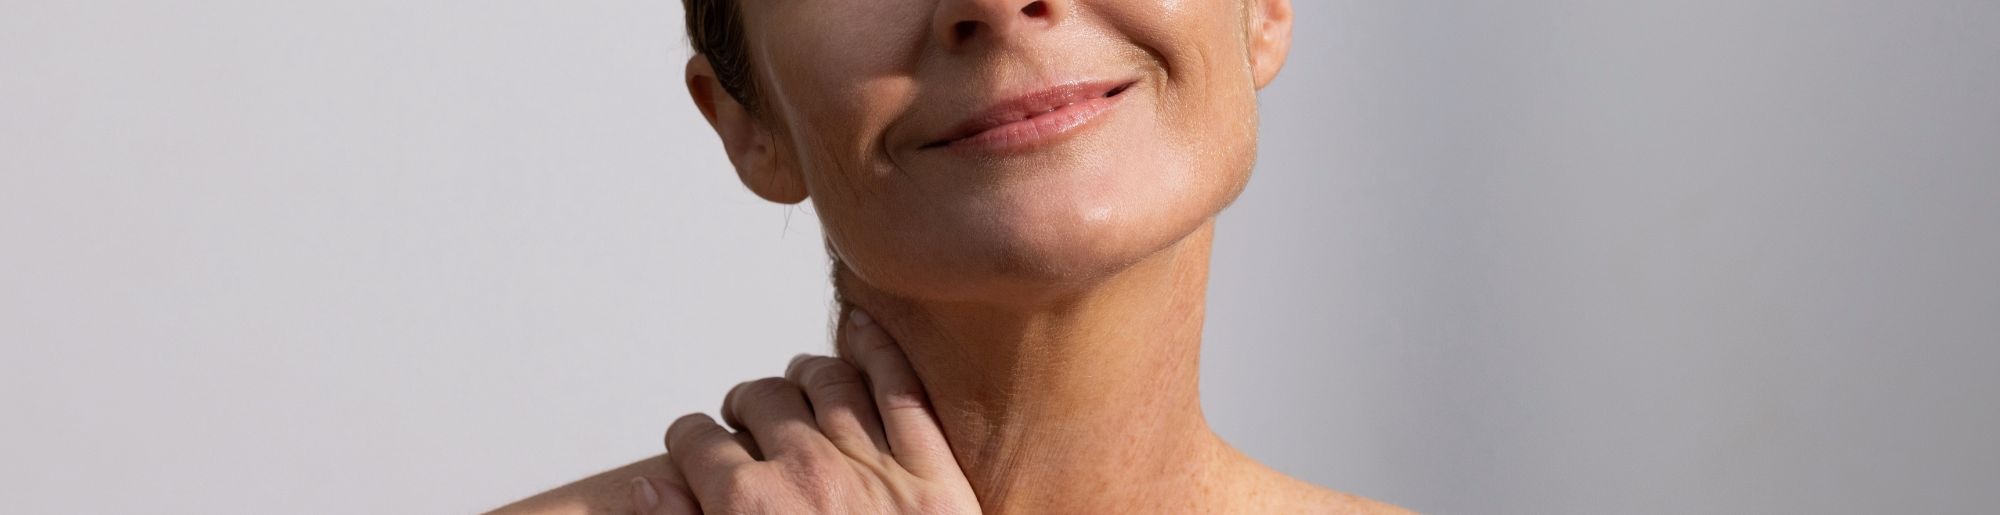 Skincare Model holding neck